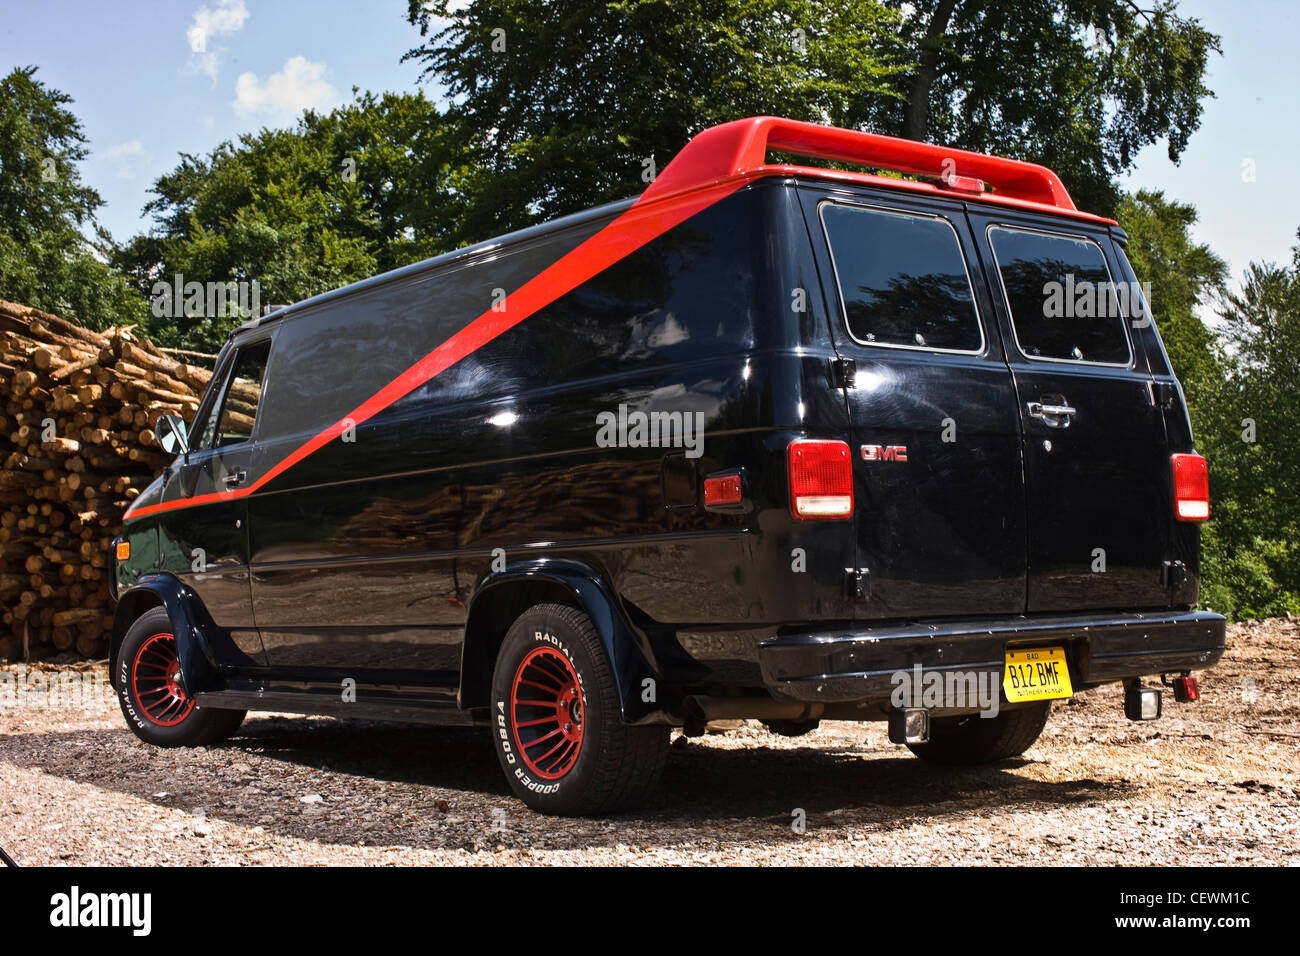 black van with red stripe